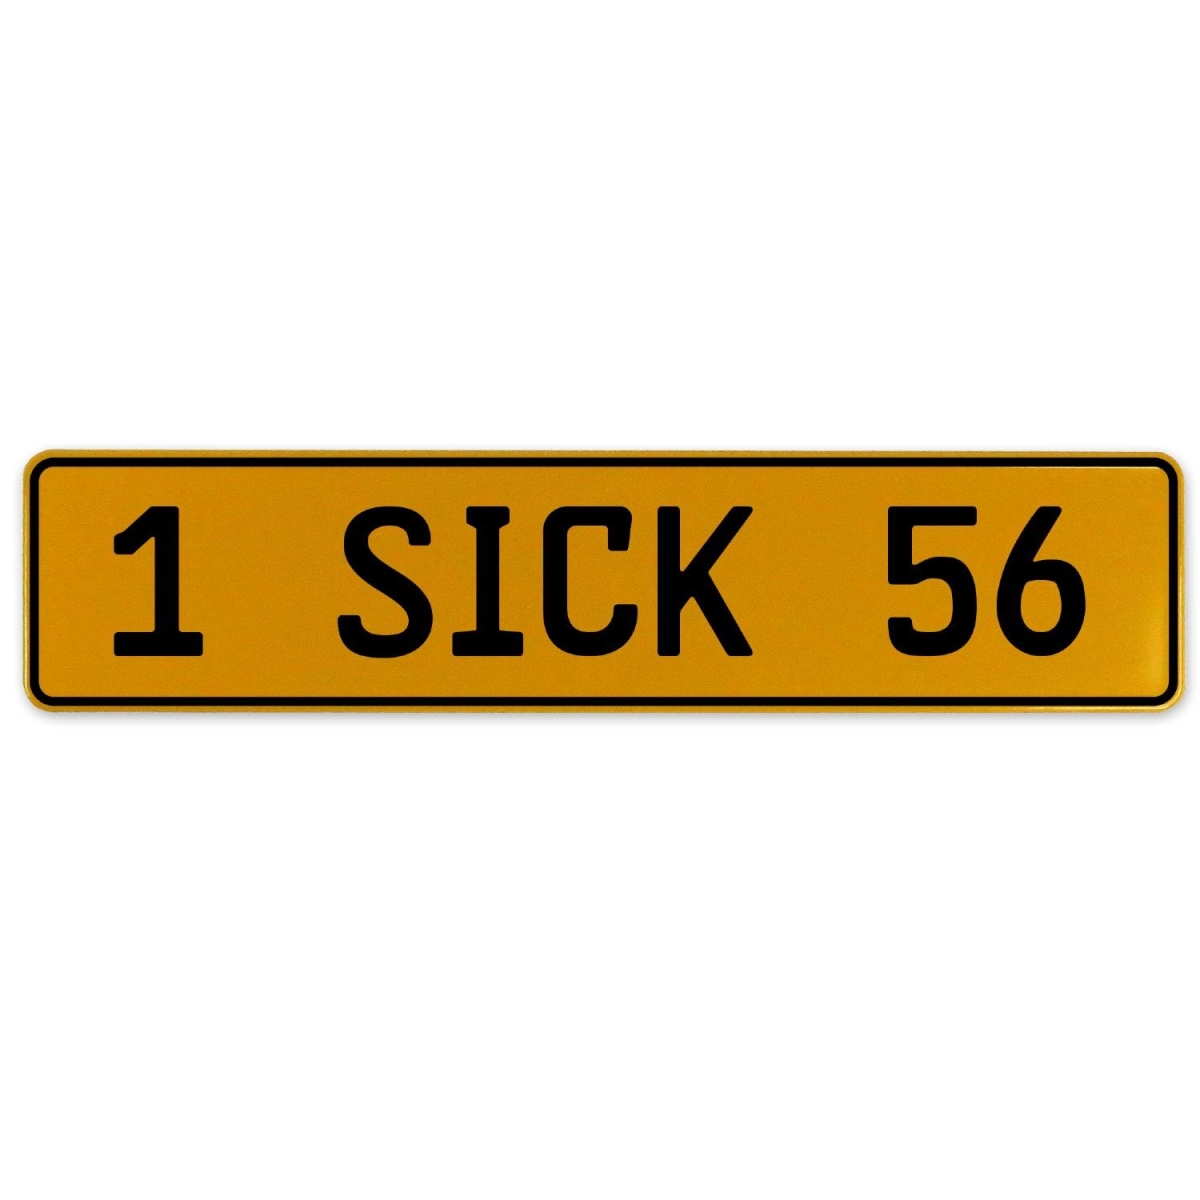 1 Sick 56 - Yellow Aluminum Street Sign Mancave Euro Plate Name Door Sign Wall